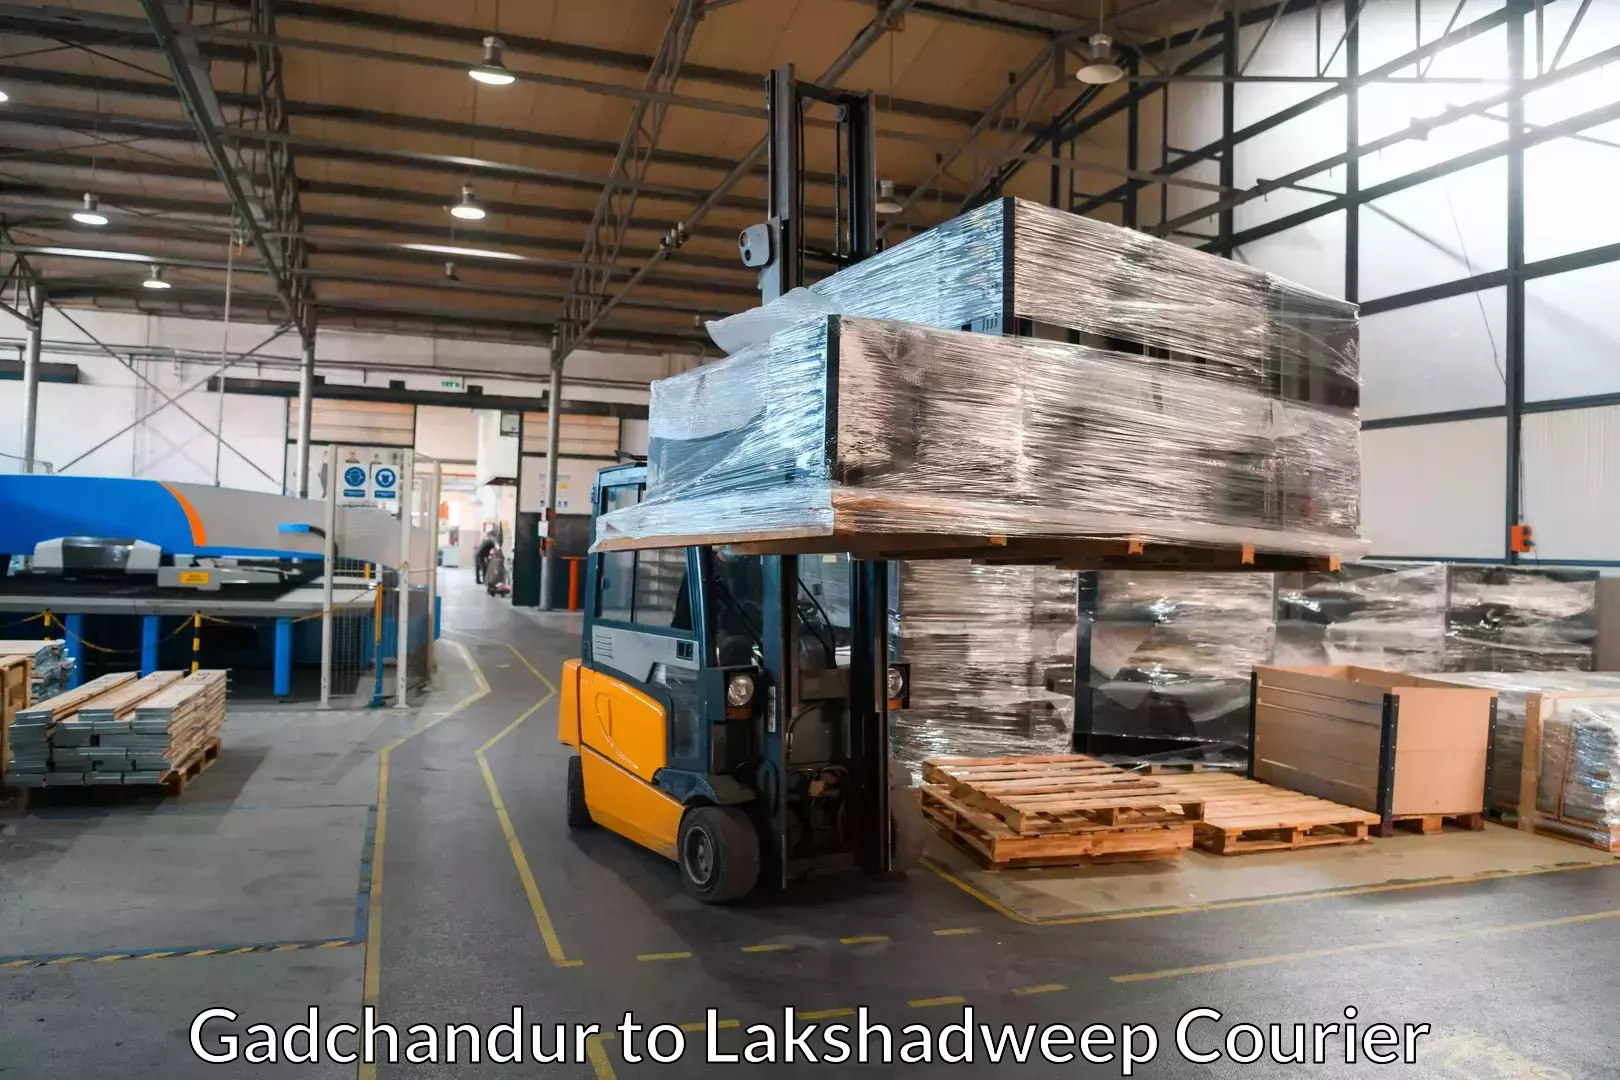 Furniture moving experts Gadchandur to Lakshadweep